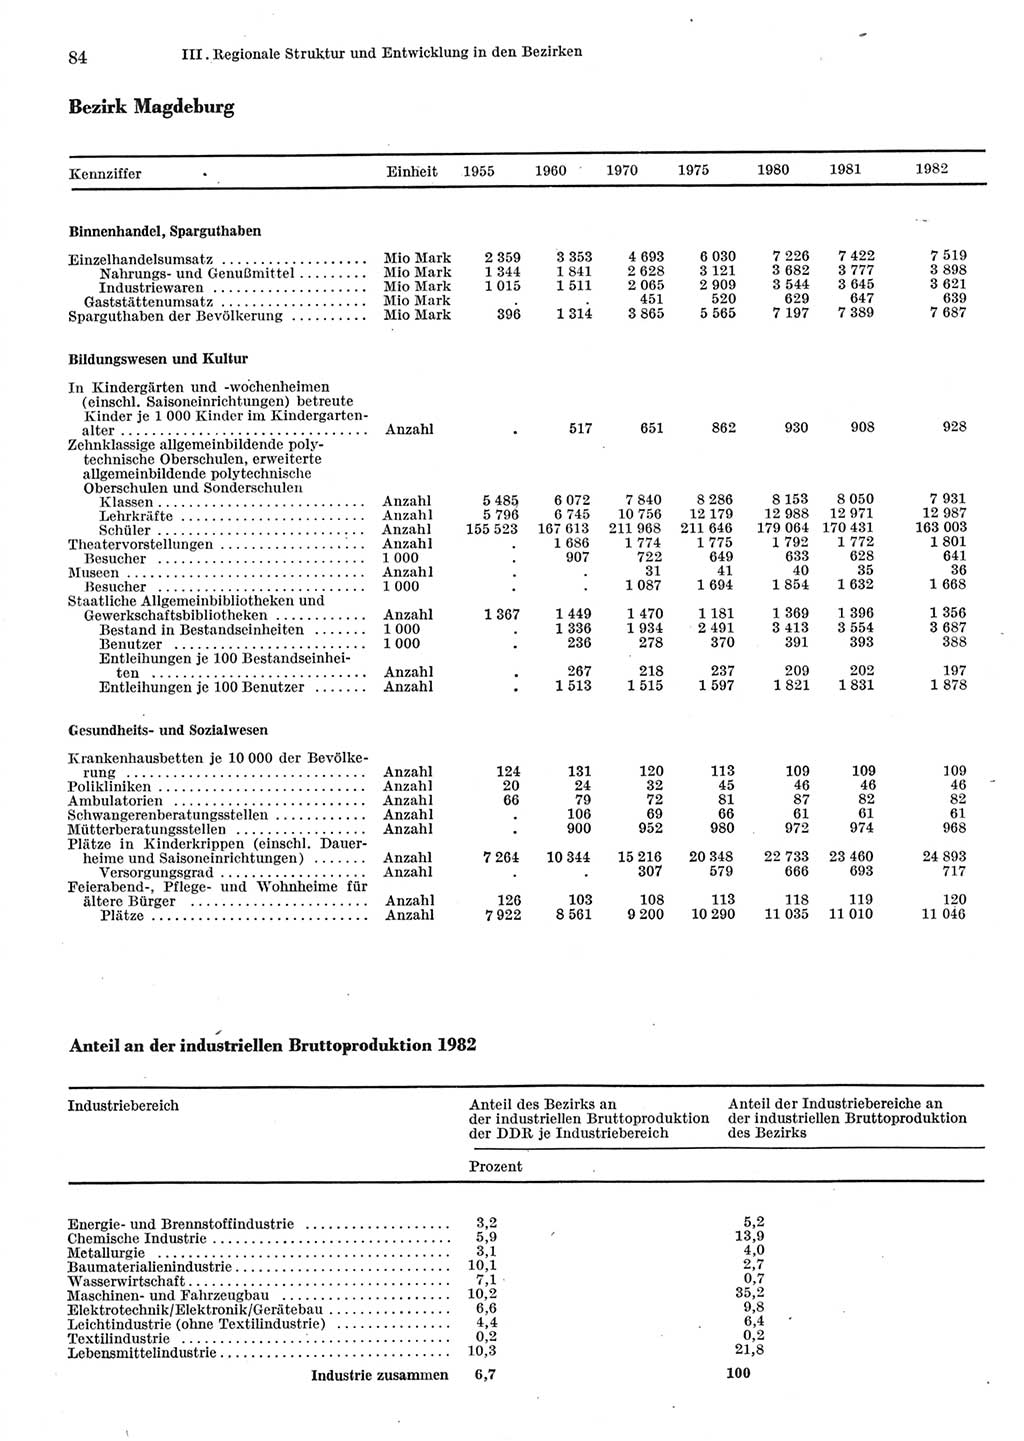 Statistisches Jahrbuch der Deutschen Demokratischen Republik (DDR) 1983, Seite 84 (Stat. Jb. DDR 1983, S. 84)